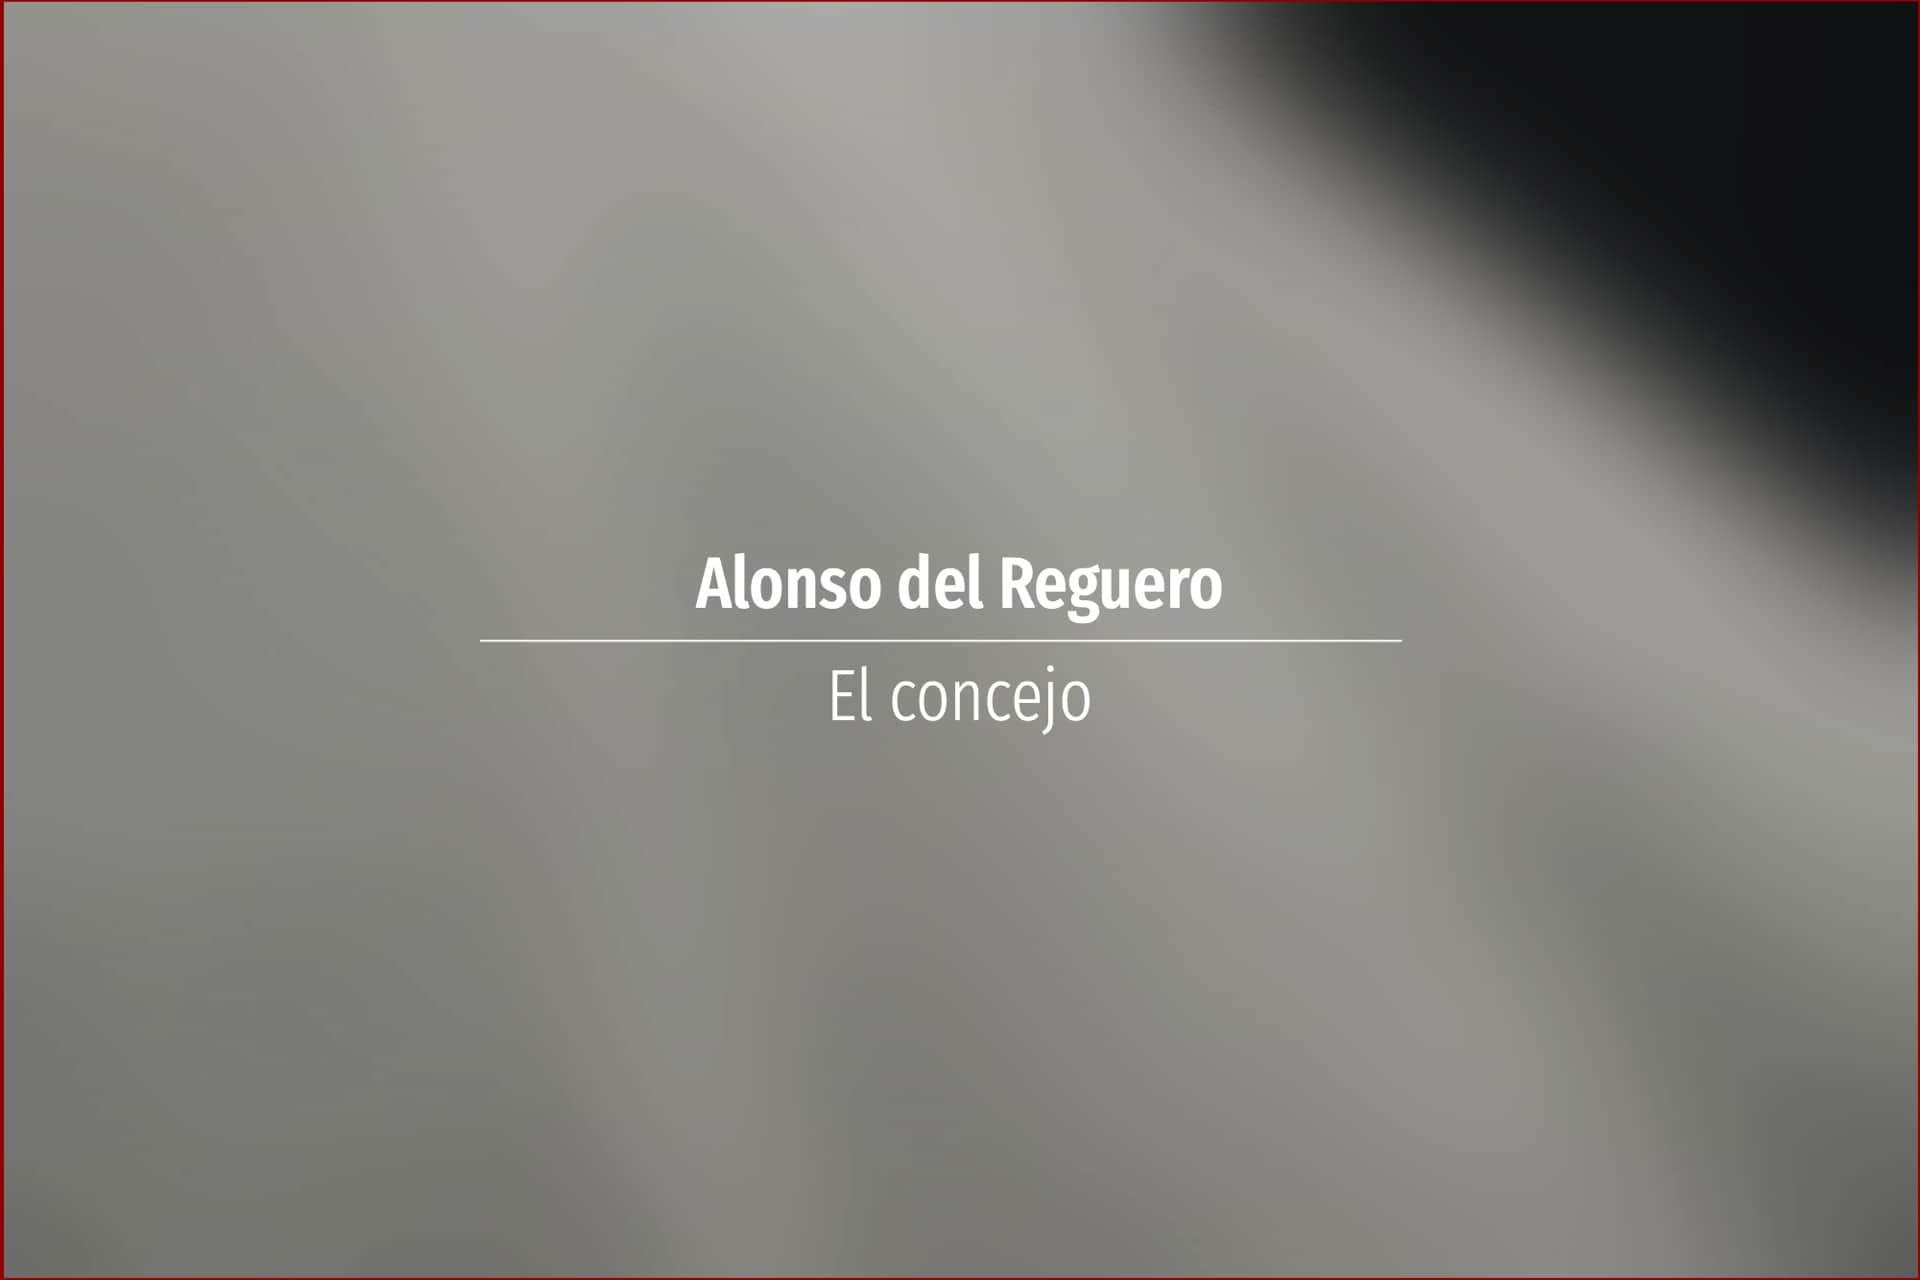 Alonso del Reguero